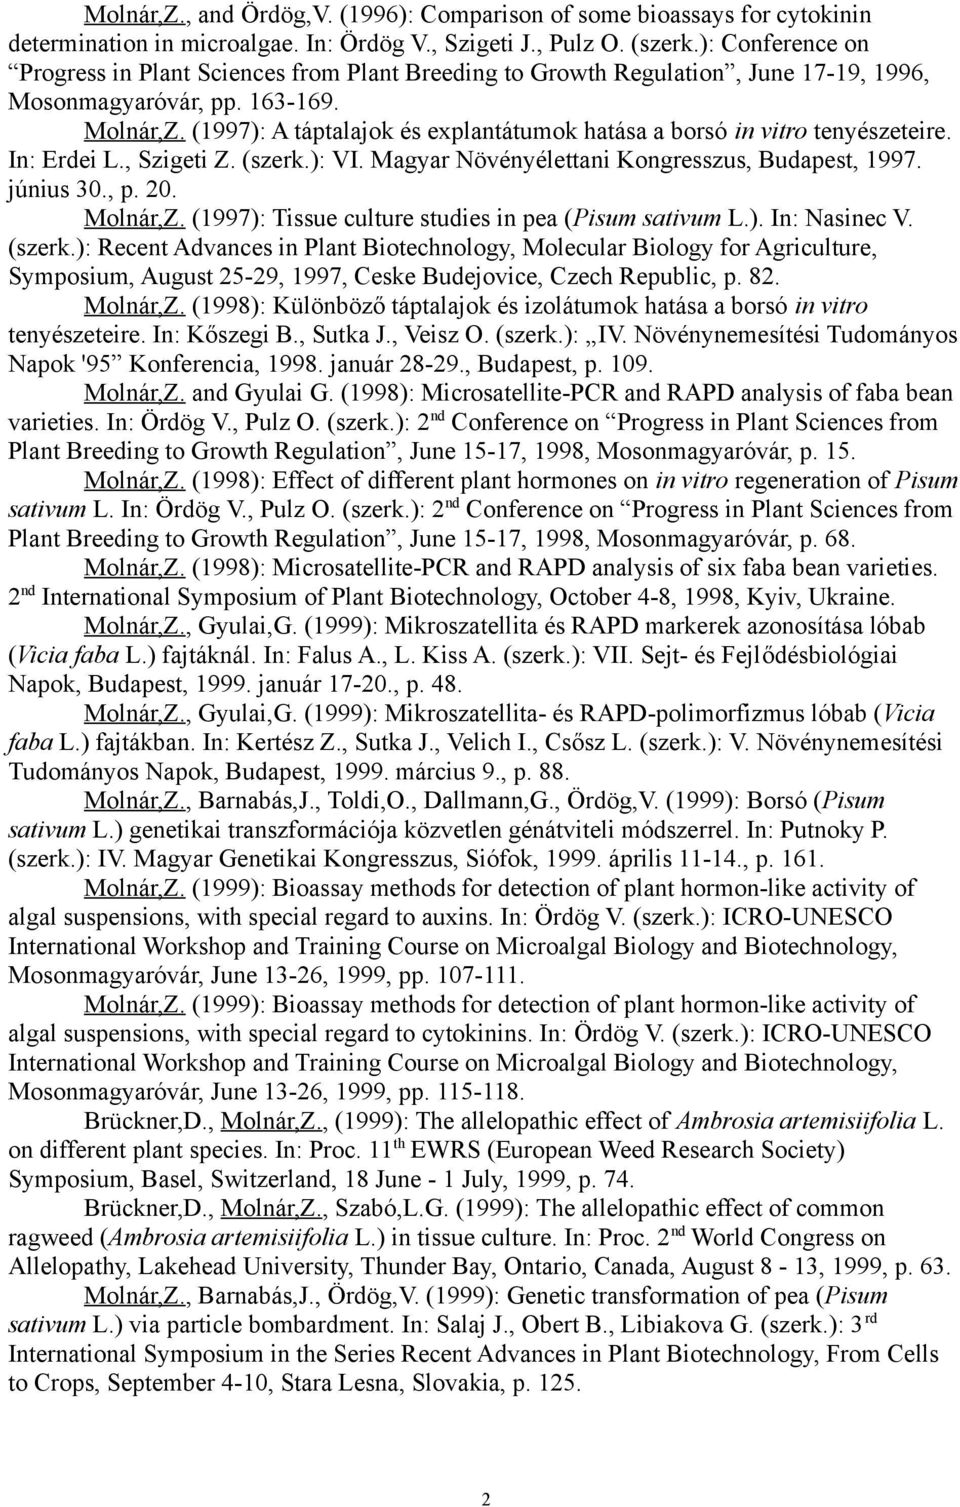 (1997): A táptalajok és explantátumok hatása a borsó in vitro tenyészeteire. In: Erdei L., Szigeti Z. (szerk.): VI. Magyar Növényélettani Kongresszus, Budapest, 1997. június 30., p. 20. Molnár,Z.